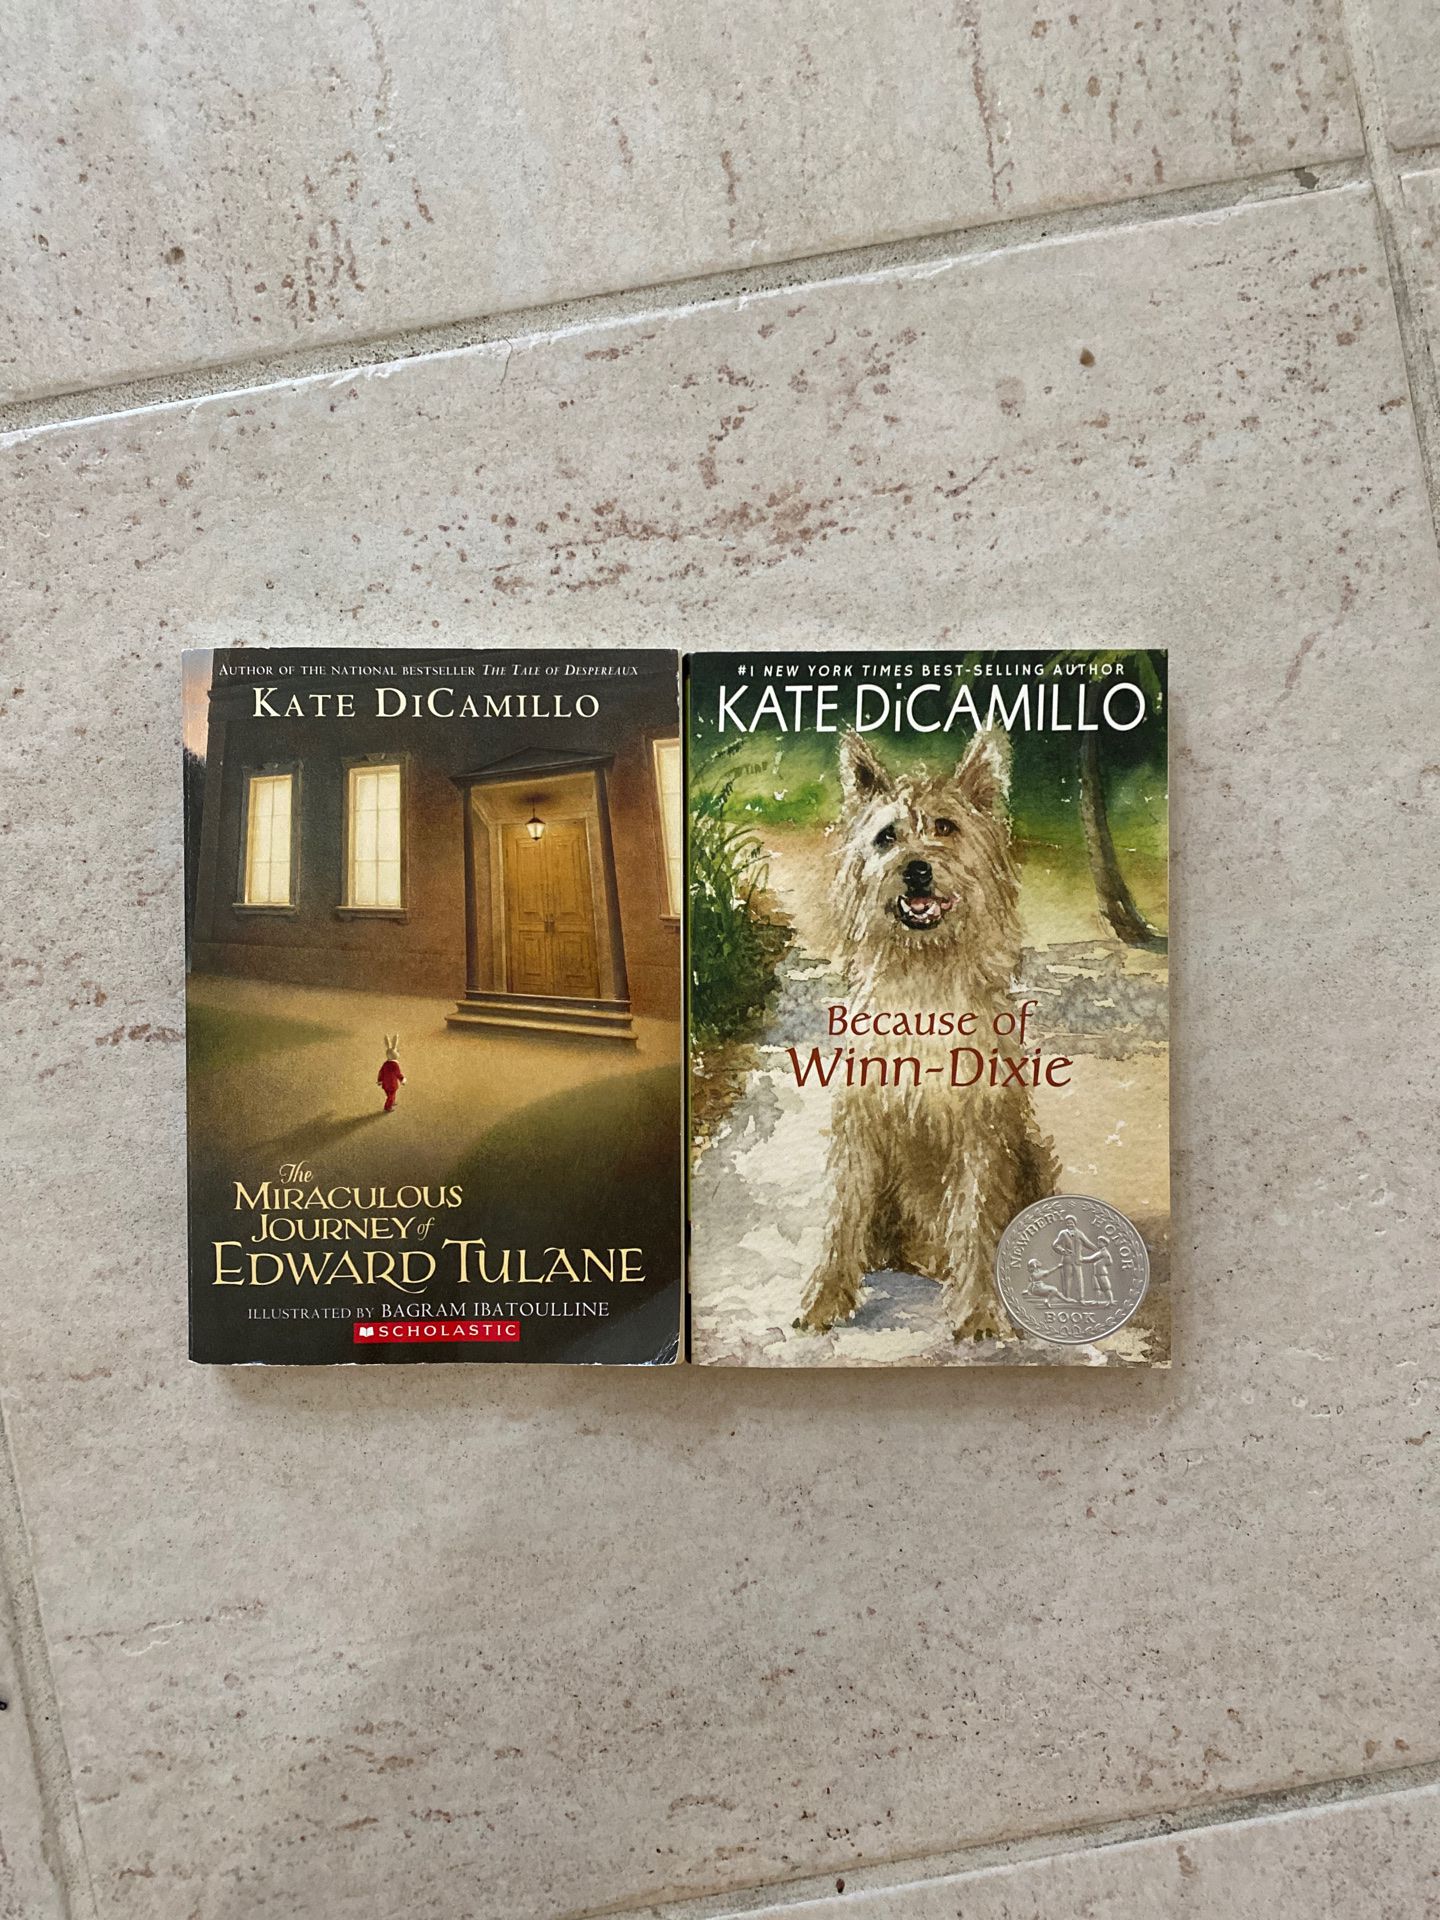 2 Kate diCamillo books